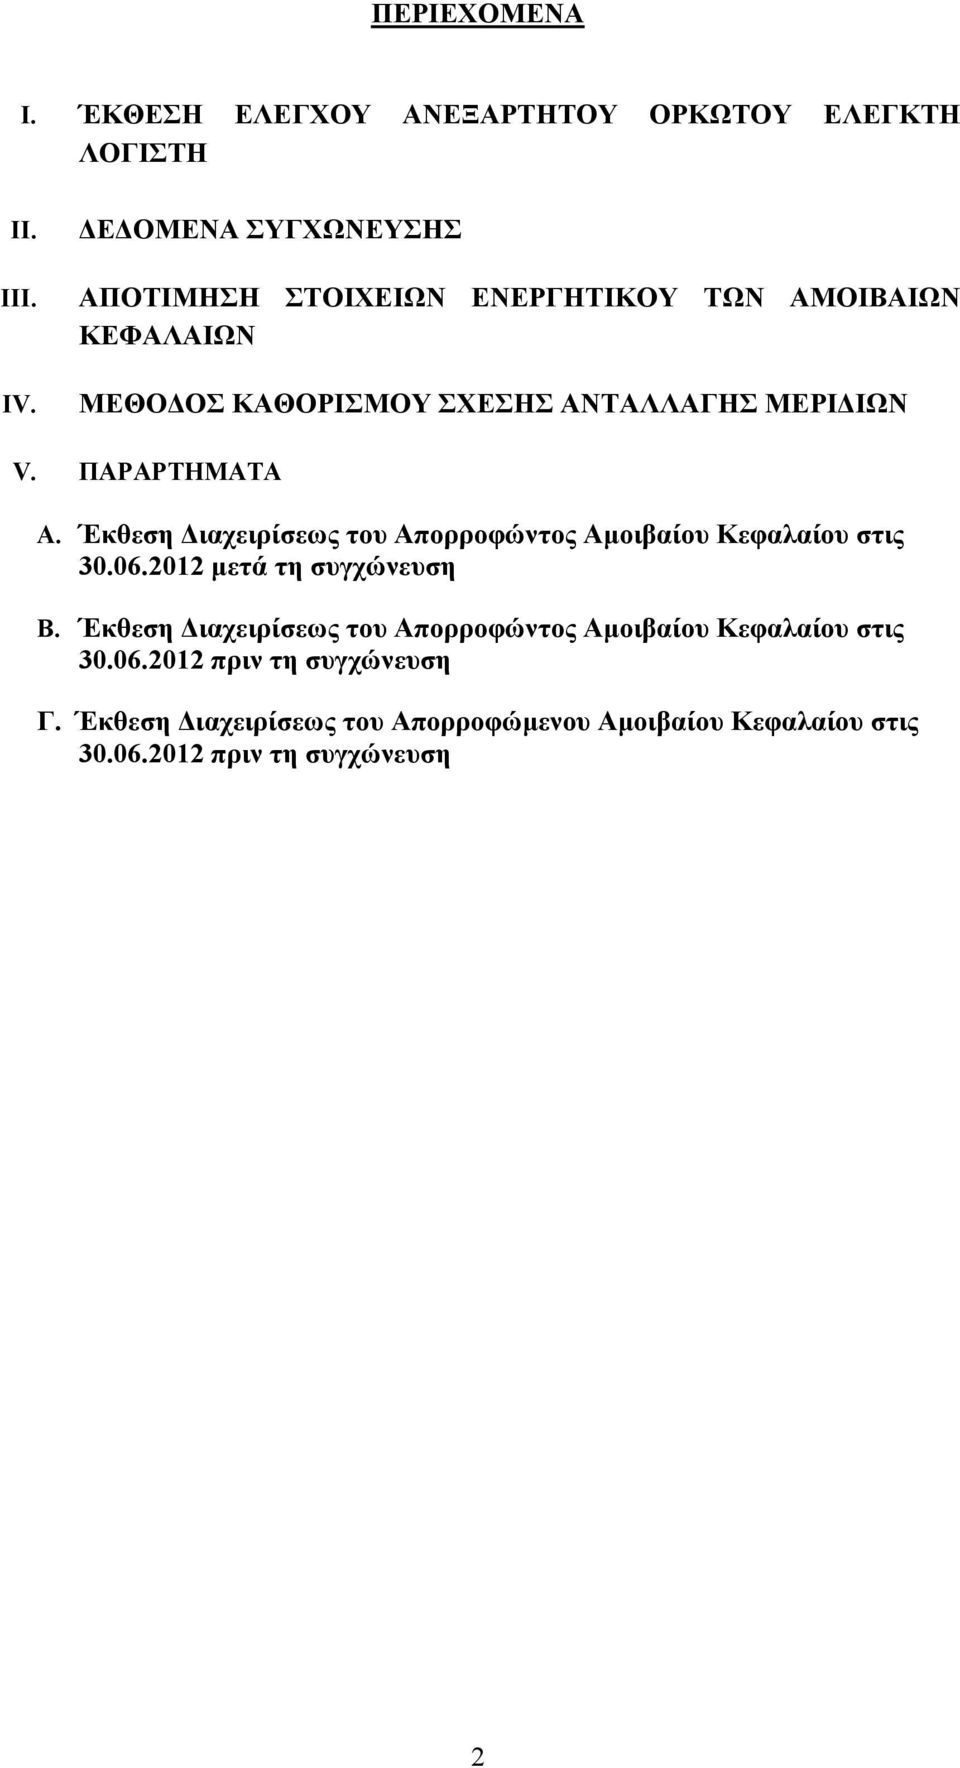 ΠΑΡΑΡΤΗΜΑΤΑ A. Έκθεση ιαχειρίσεως του Απορροφώντος Αµοιβαίου Κεφαλαίου στις 30.06.2012 µετά τη συγχώνευση B.